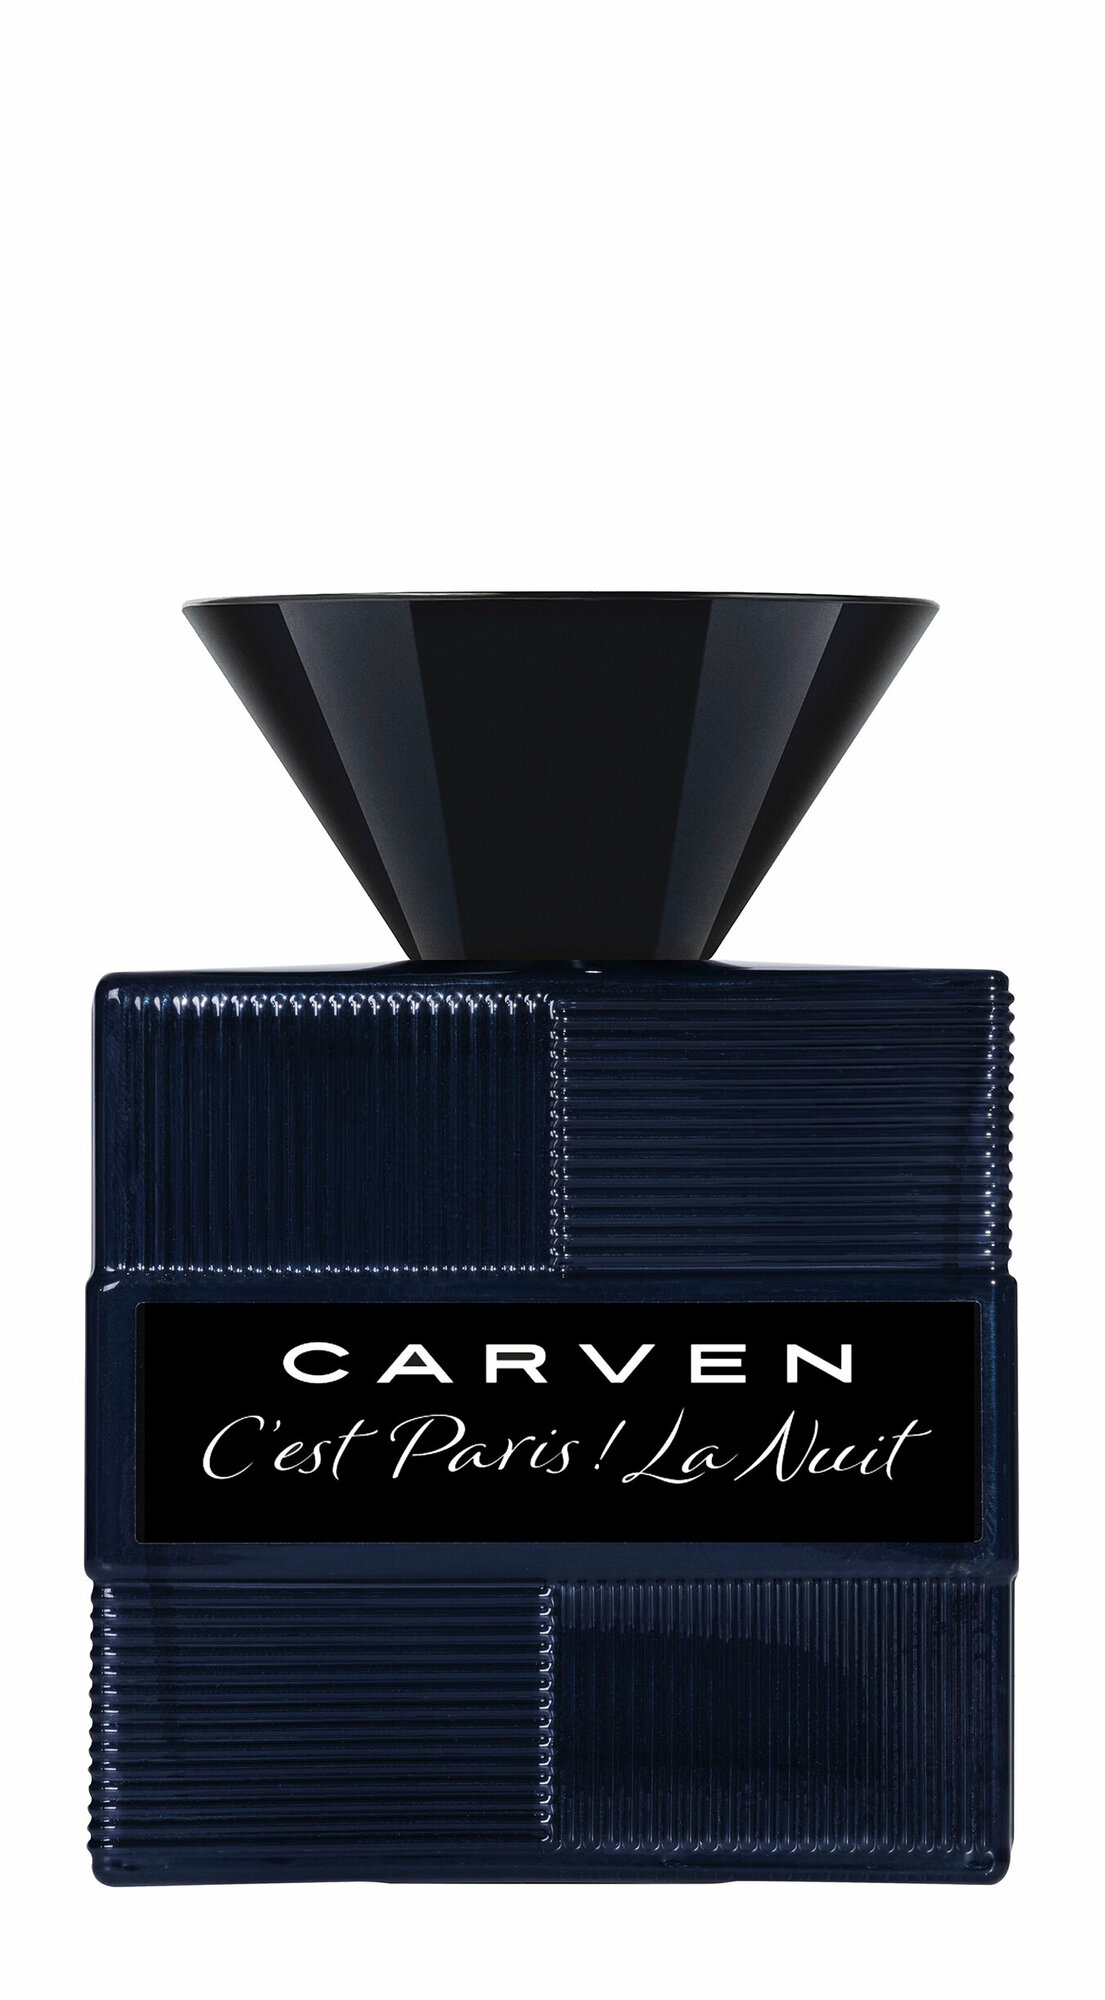 CARVEN C'est Paris ! La Nuit Pour Homme, Парфюмерная вода муж, 30 мл